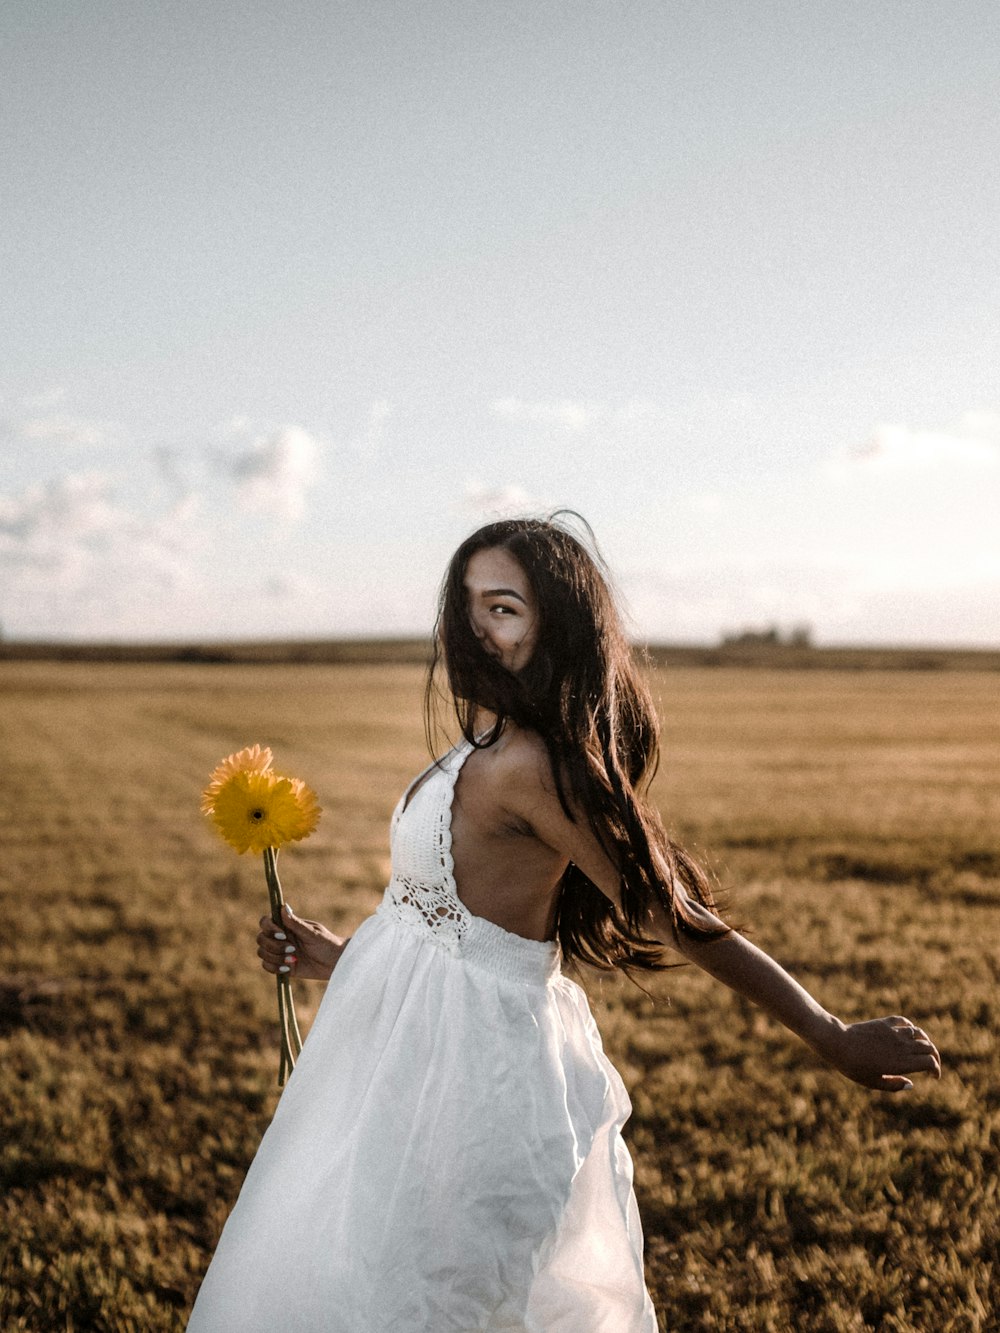 Frau in weißem Kleid tagsüber auf braunem Rasen steht